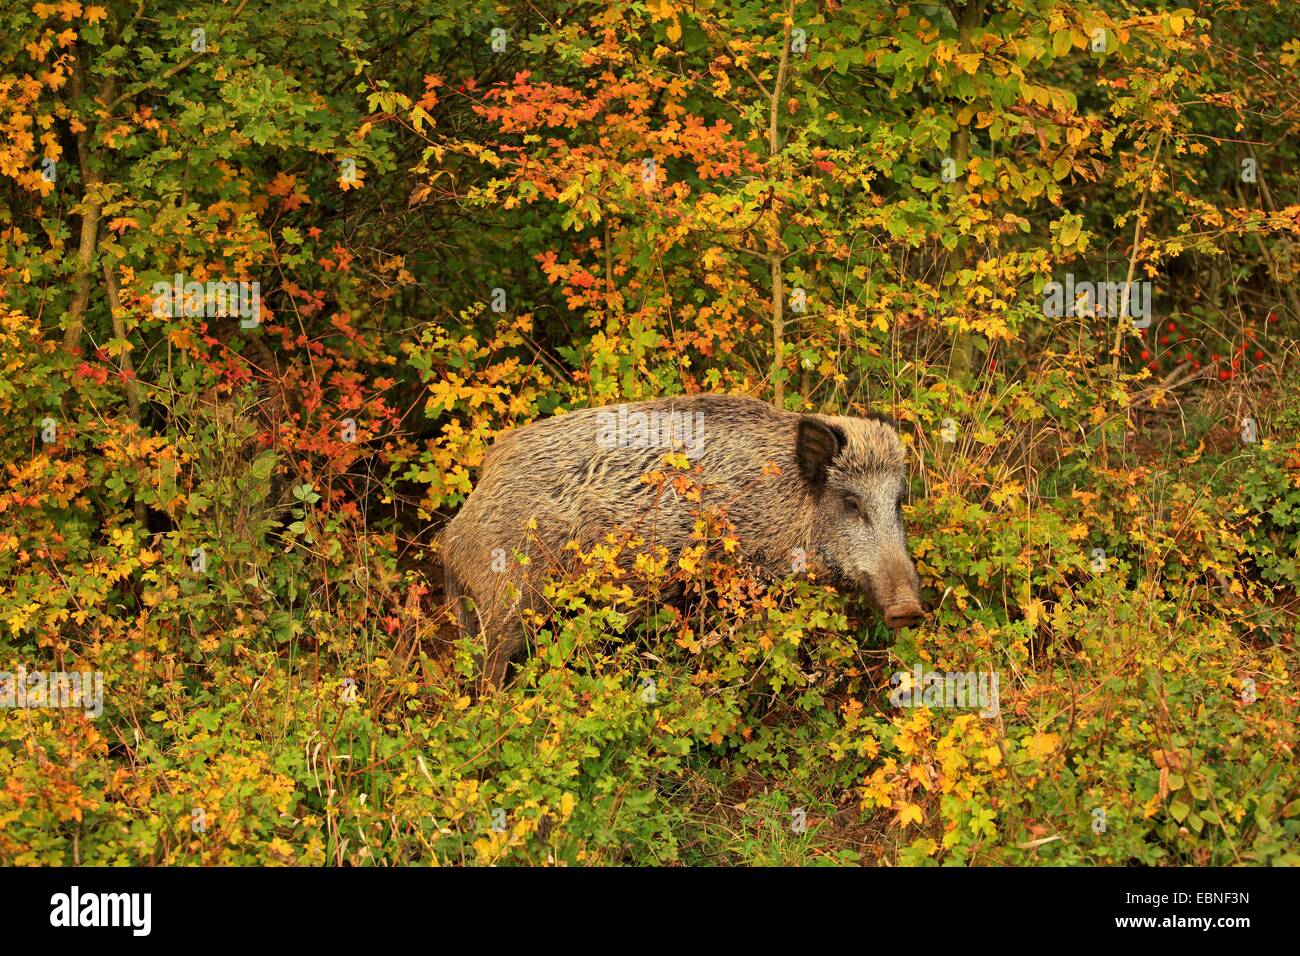 Le sanglier, le porc, le sanglier (Sus scrofa), debout dans le fourré, Allemagne, Bade-Wurtemberg Banque D'Images